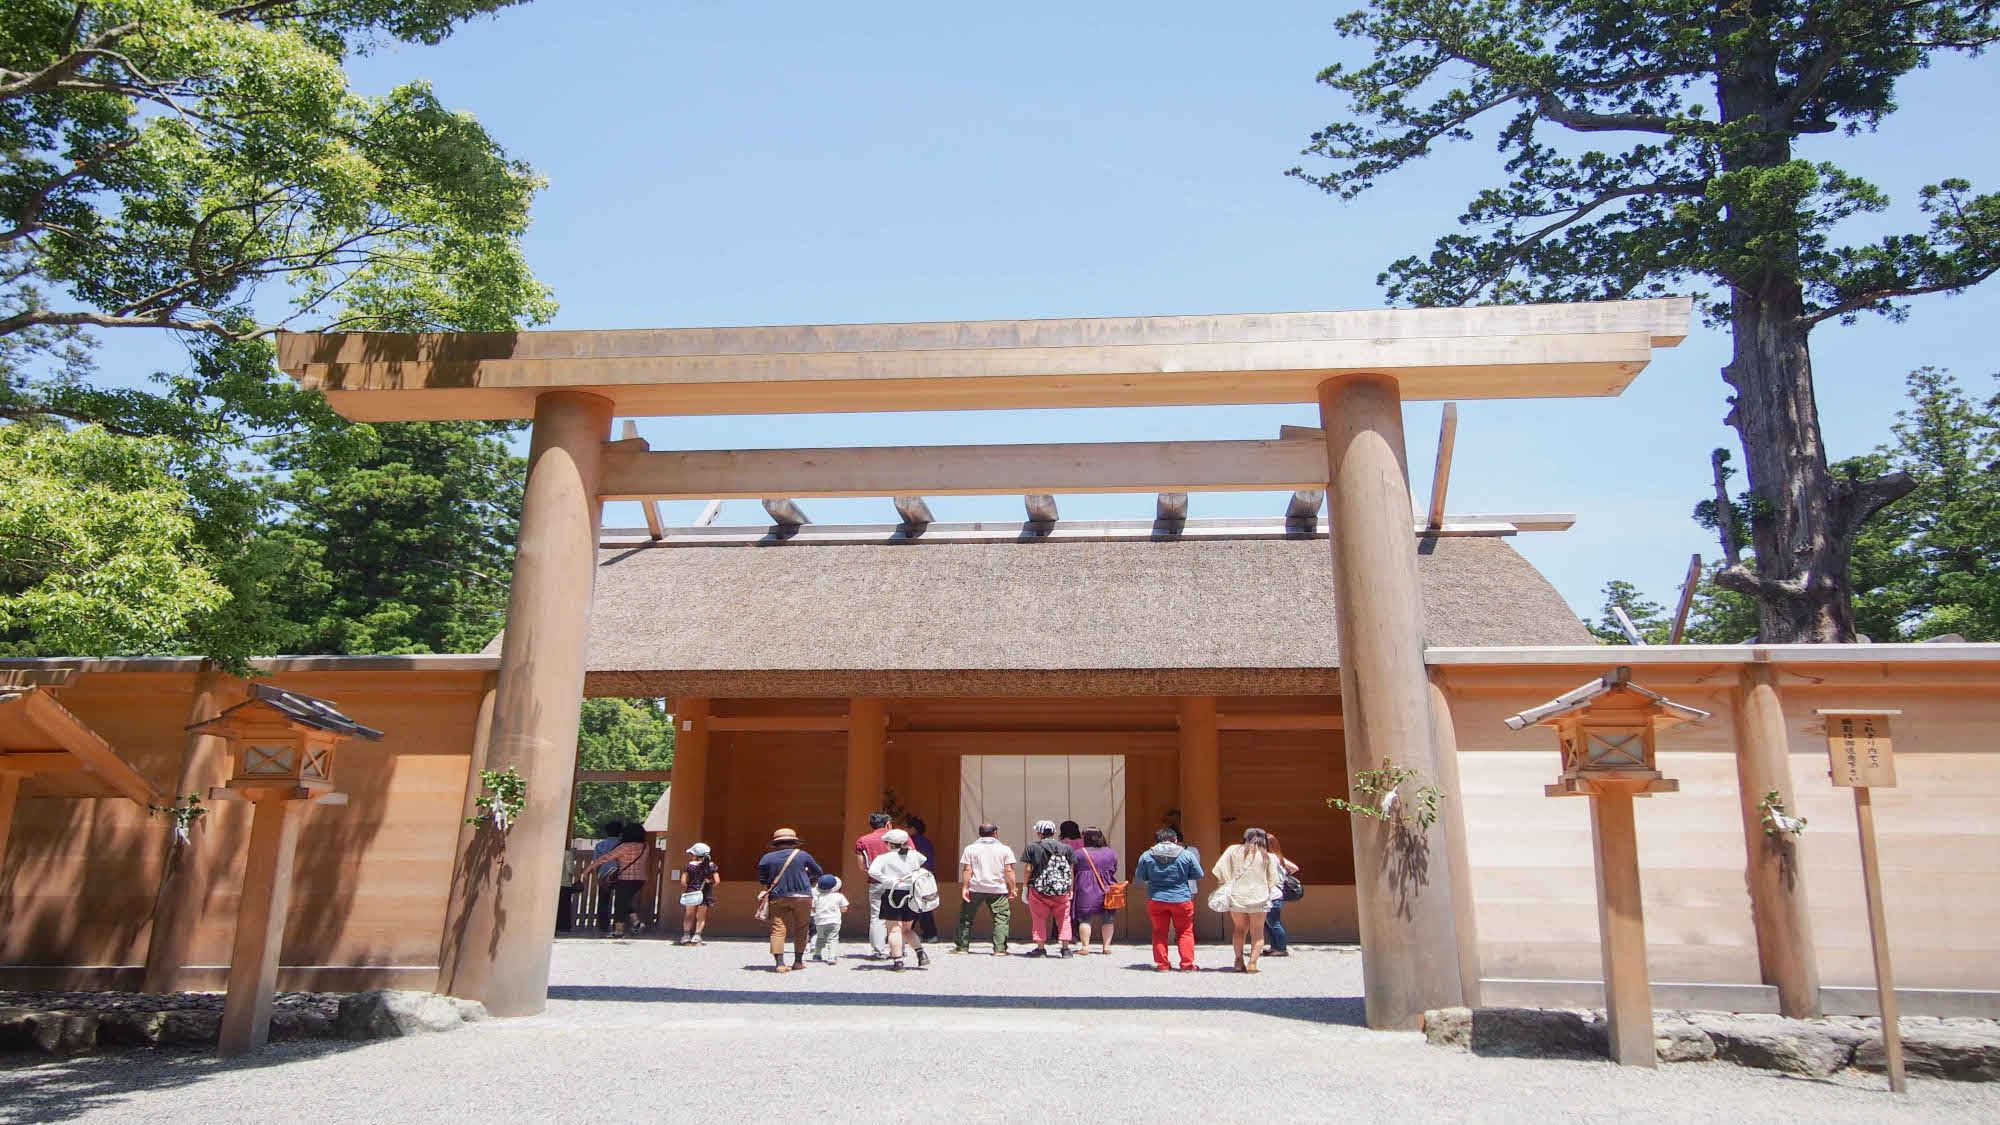  【外宮】高倉山麓の広大な神苑には杉の大木があり、参道には鶏も群れ遊んでいます。当館より車で１７分